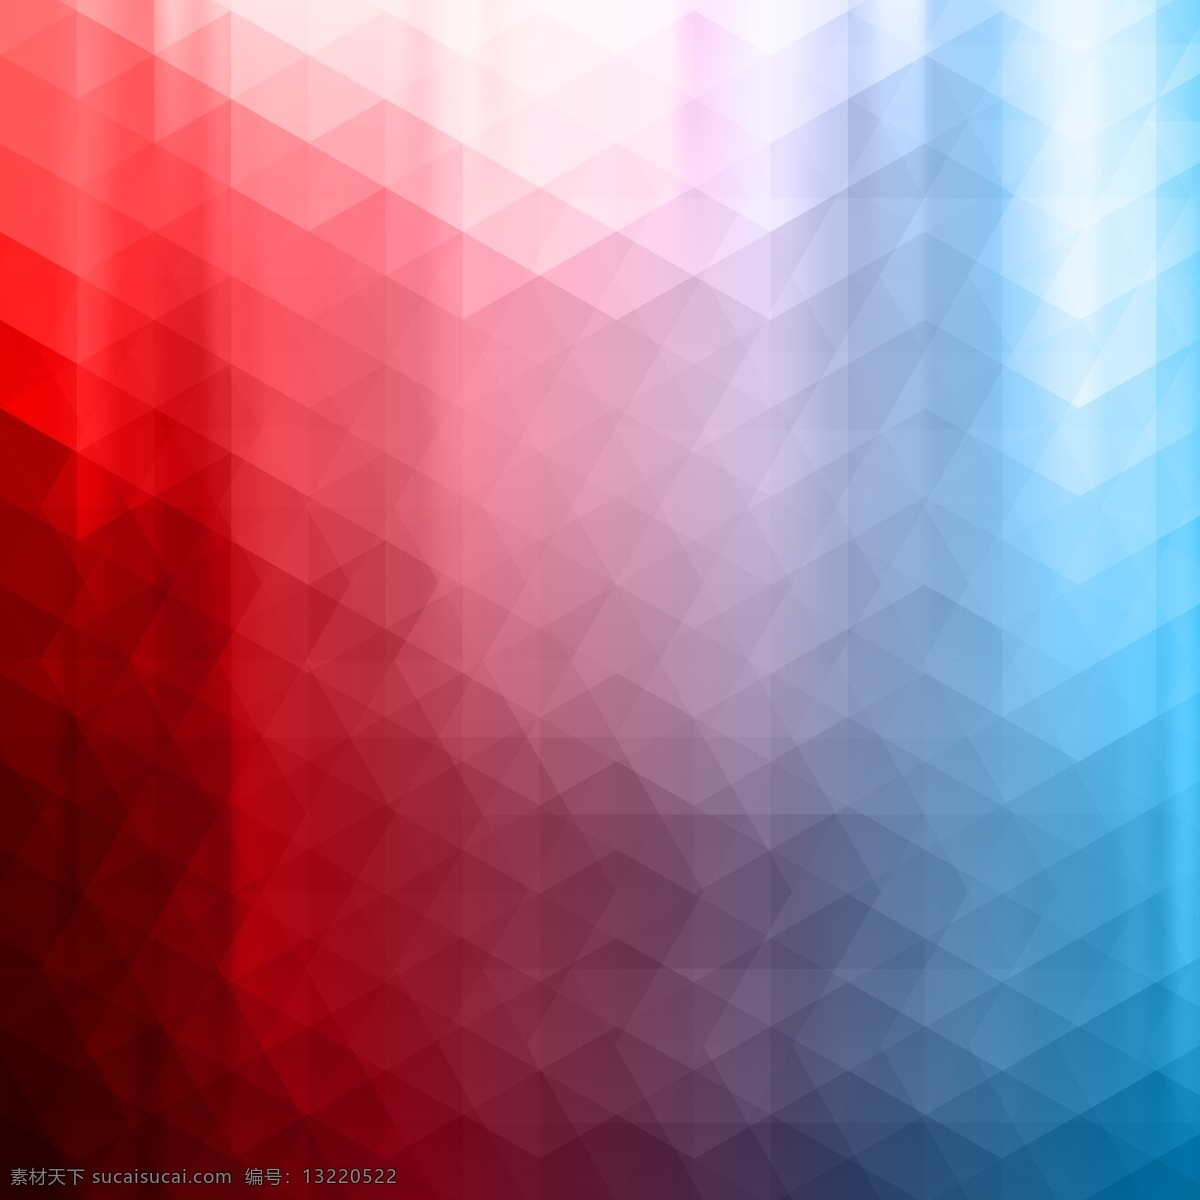 红色 几何 三角 背景 矢量 壁纸 抽象 多边形 红 红底 几何背景 蓝底